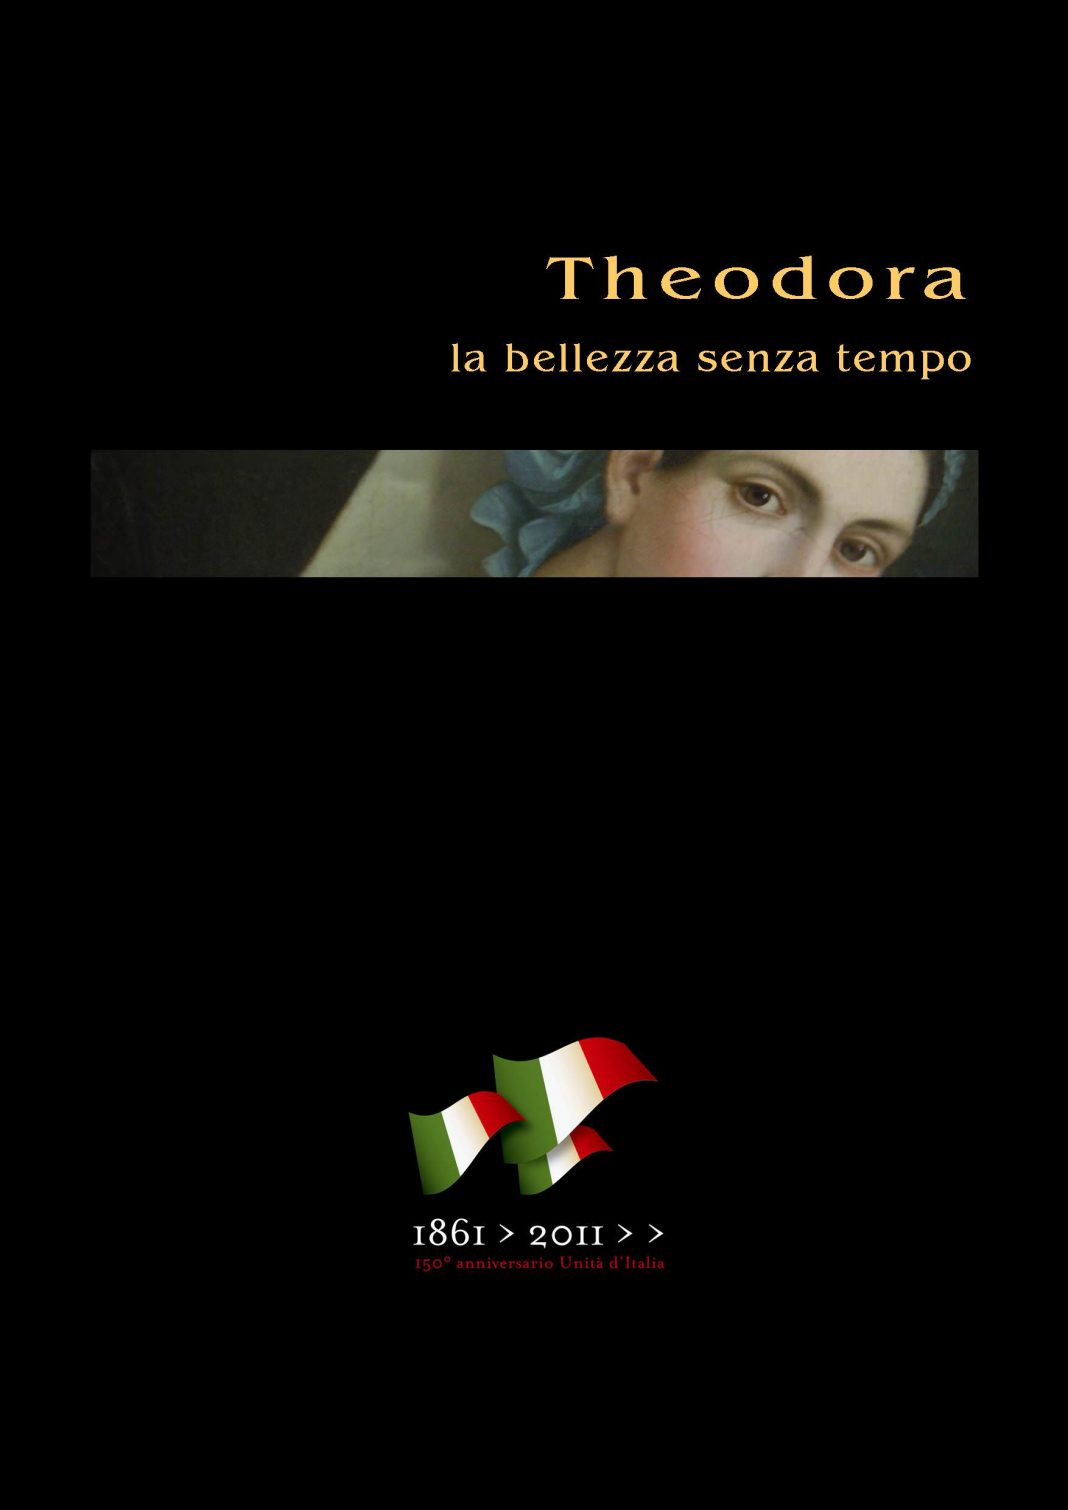 Theodora, la bellezza senza tempohttps://www.exibart.com/repository/media/eventi/2011/11/theodora-la-bellezza-senza-tempo-1068x1510.jpg